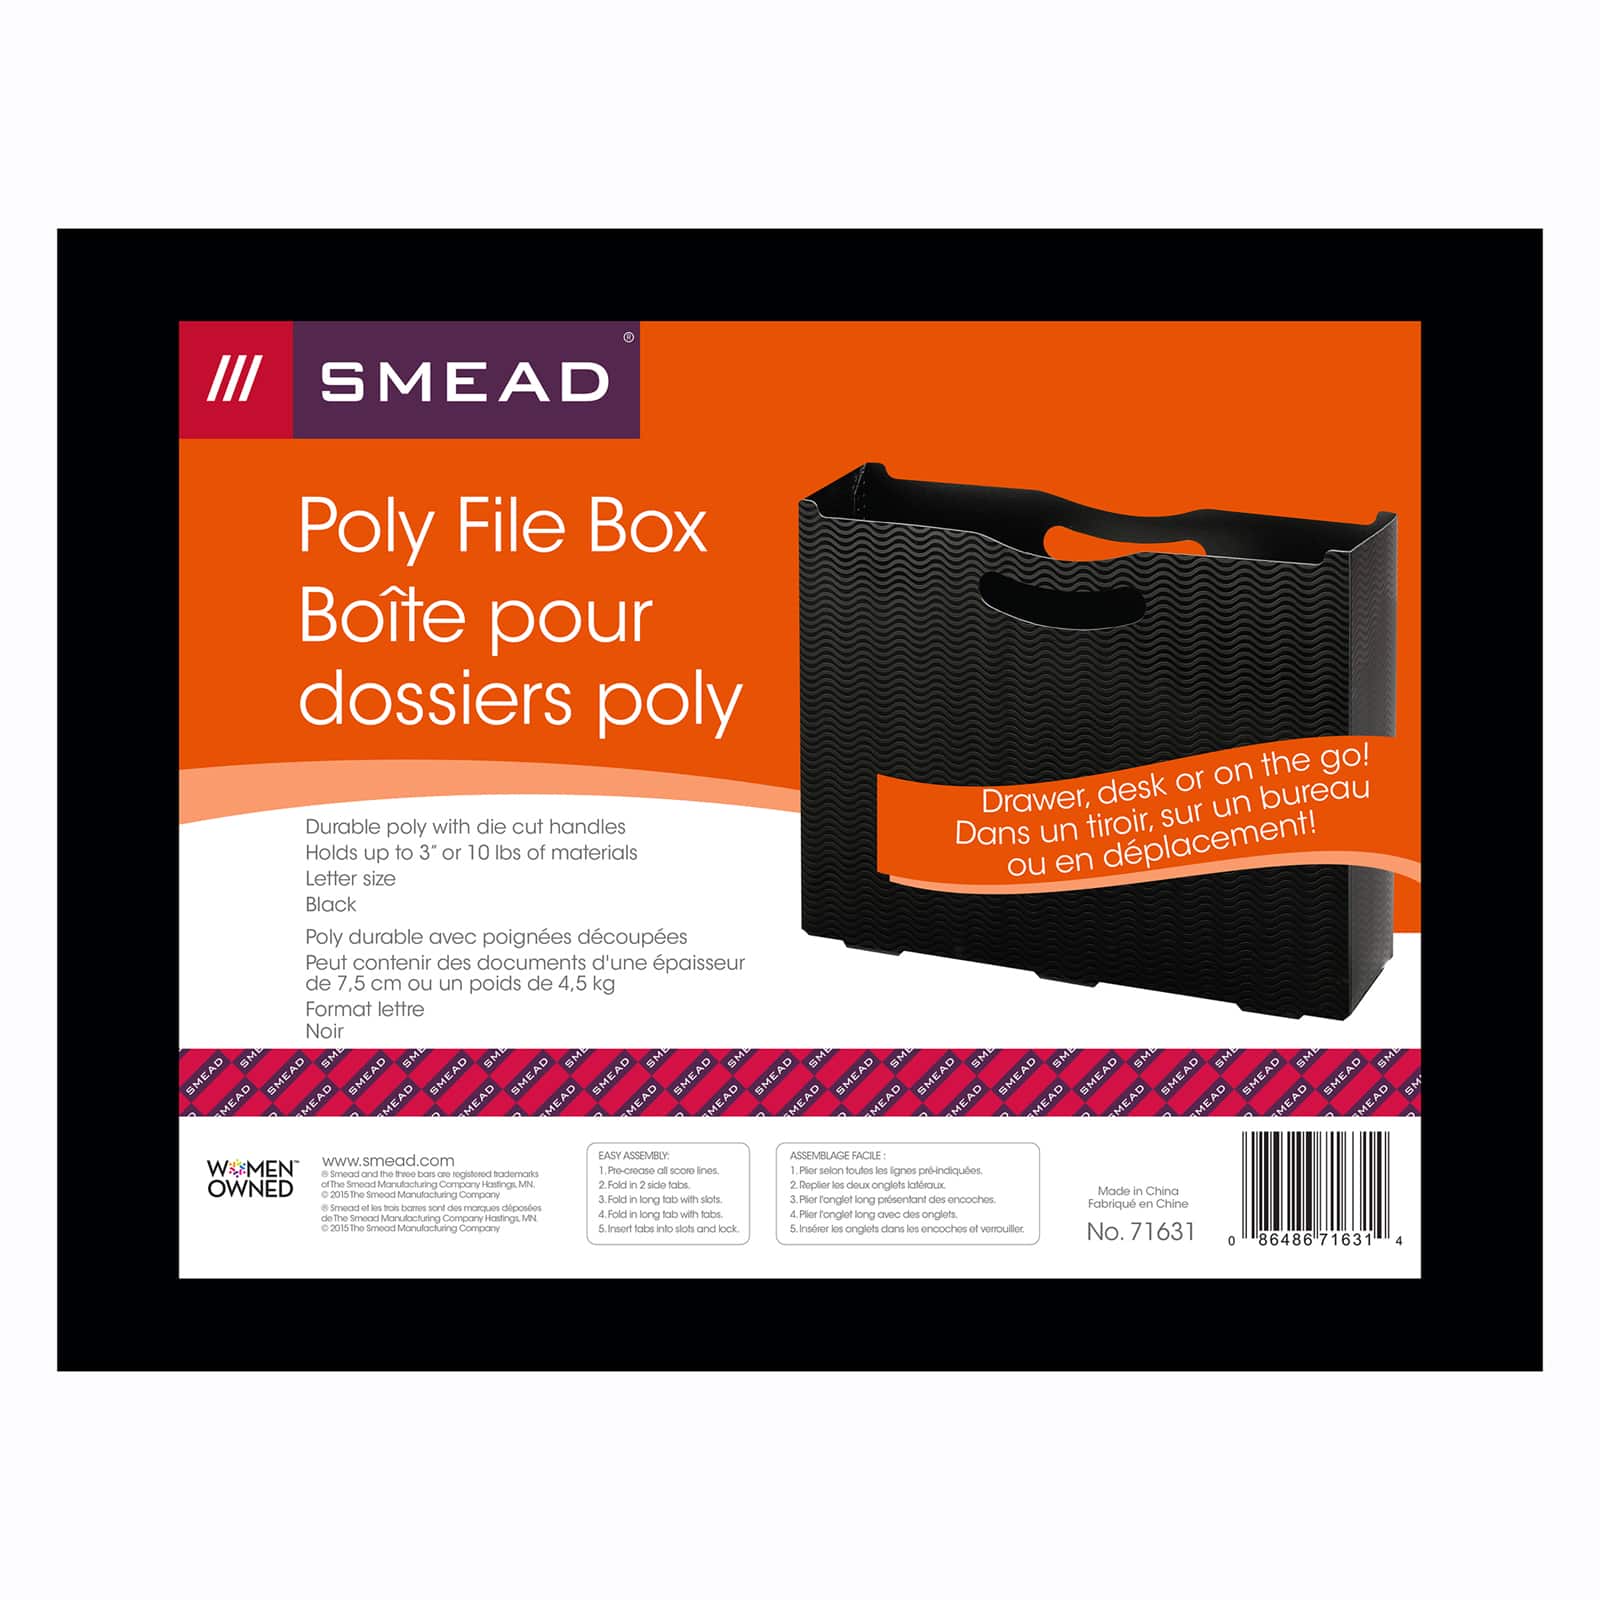 Smead&#xAE; Poly File Box, 2ct.